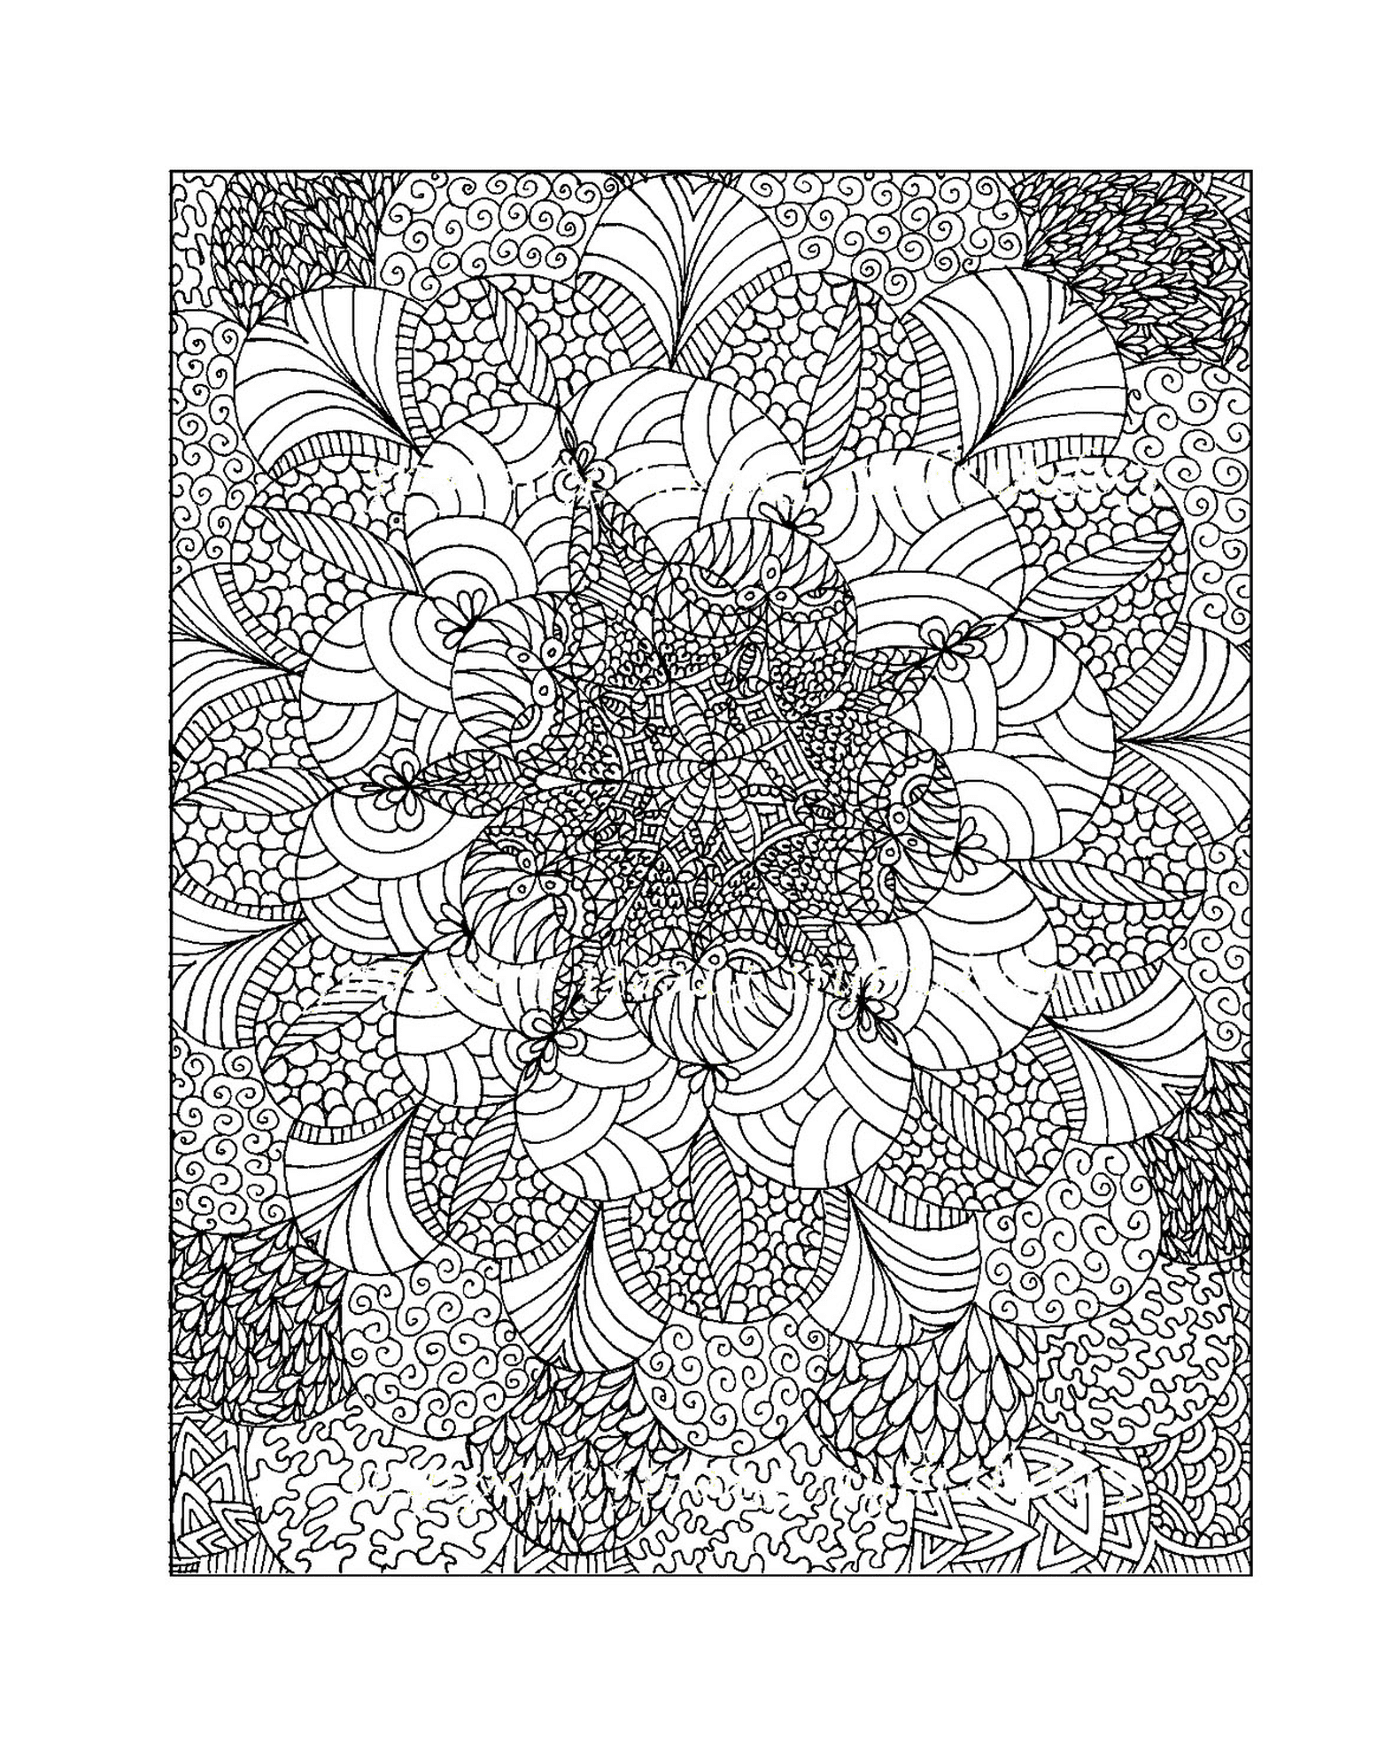  जटिल फूल का चित्रा 